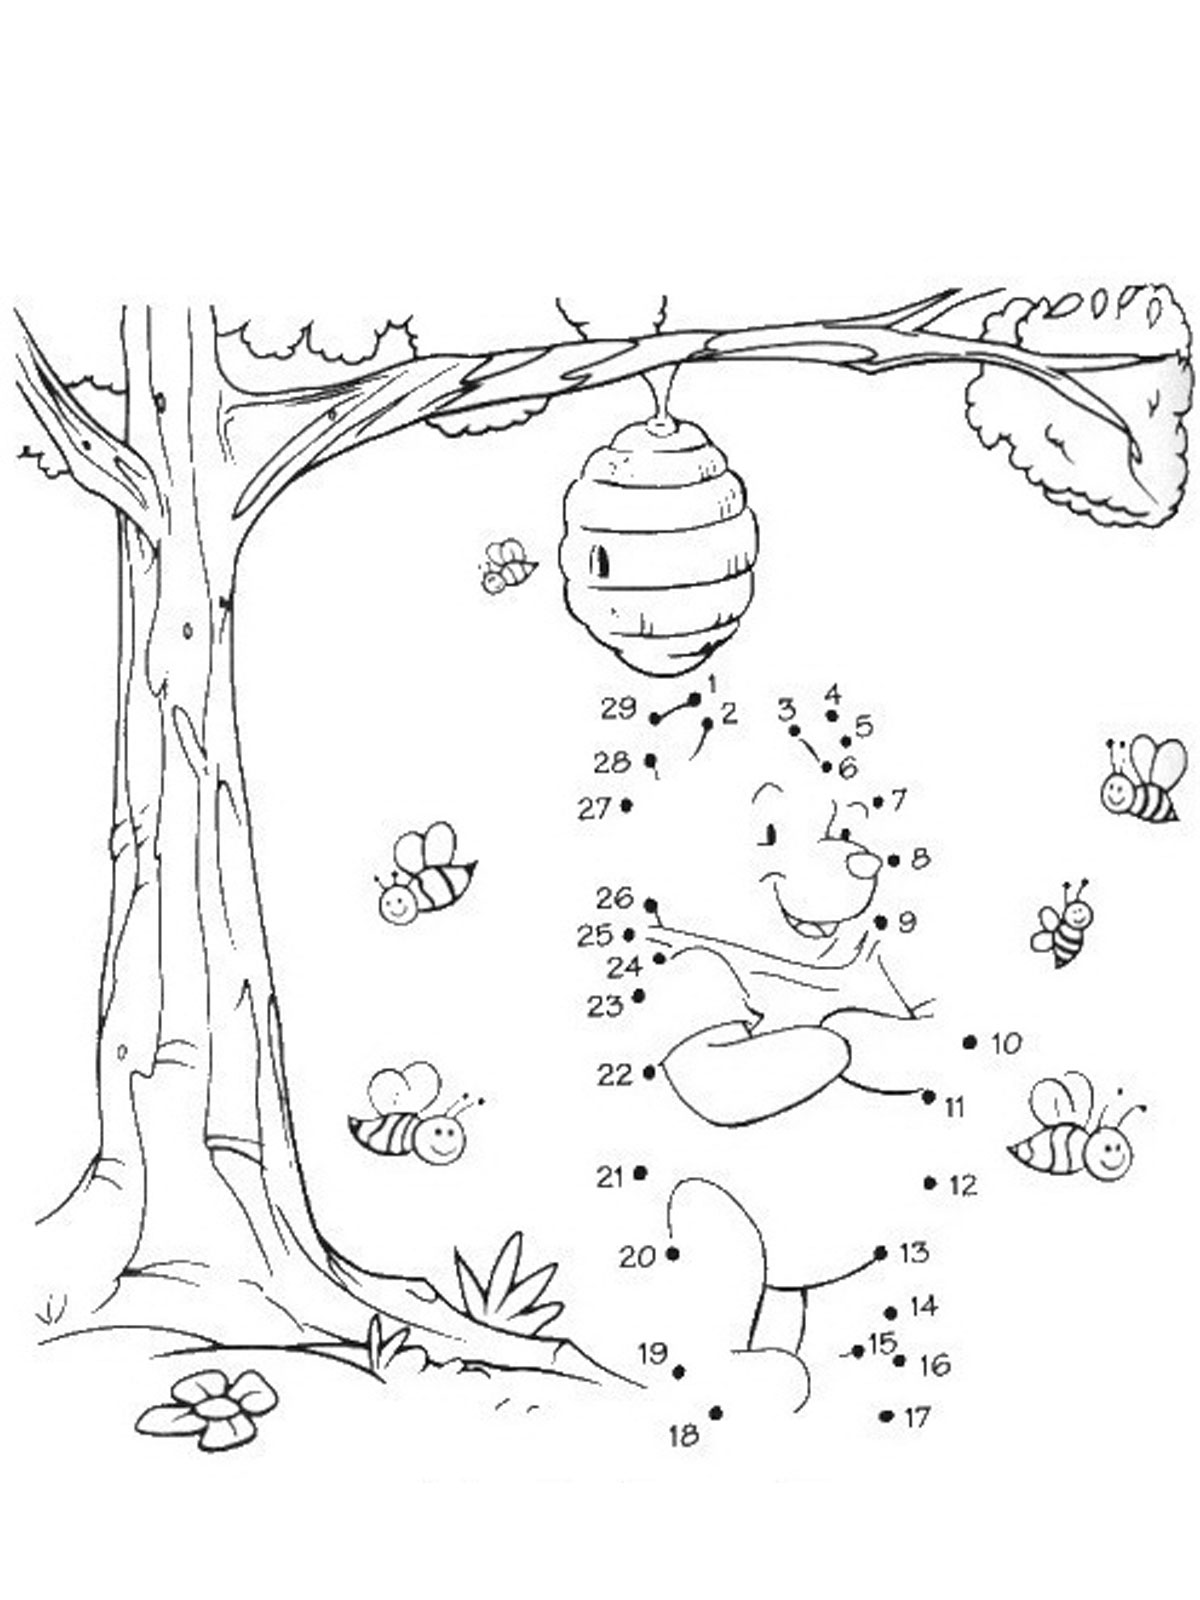 Раскраски из зарубежного мультфильма про Винни Пуха и его друзей для самых маленьких   Соедини точки чтоб получился винни пух